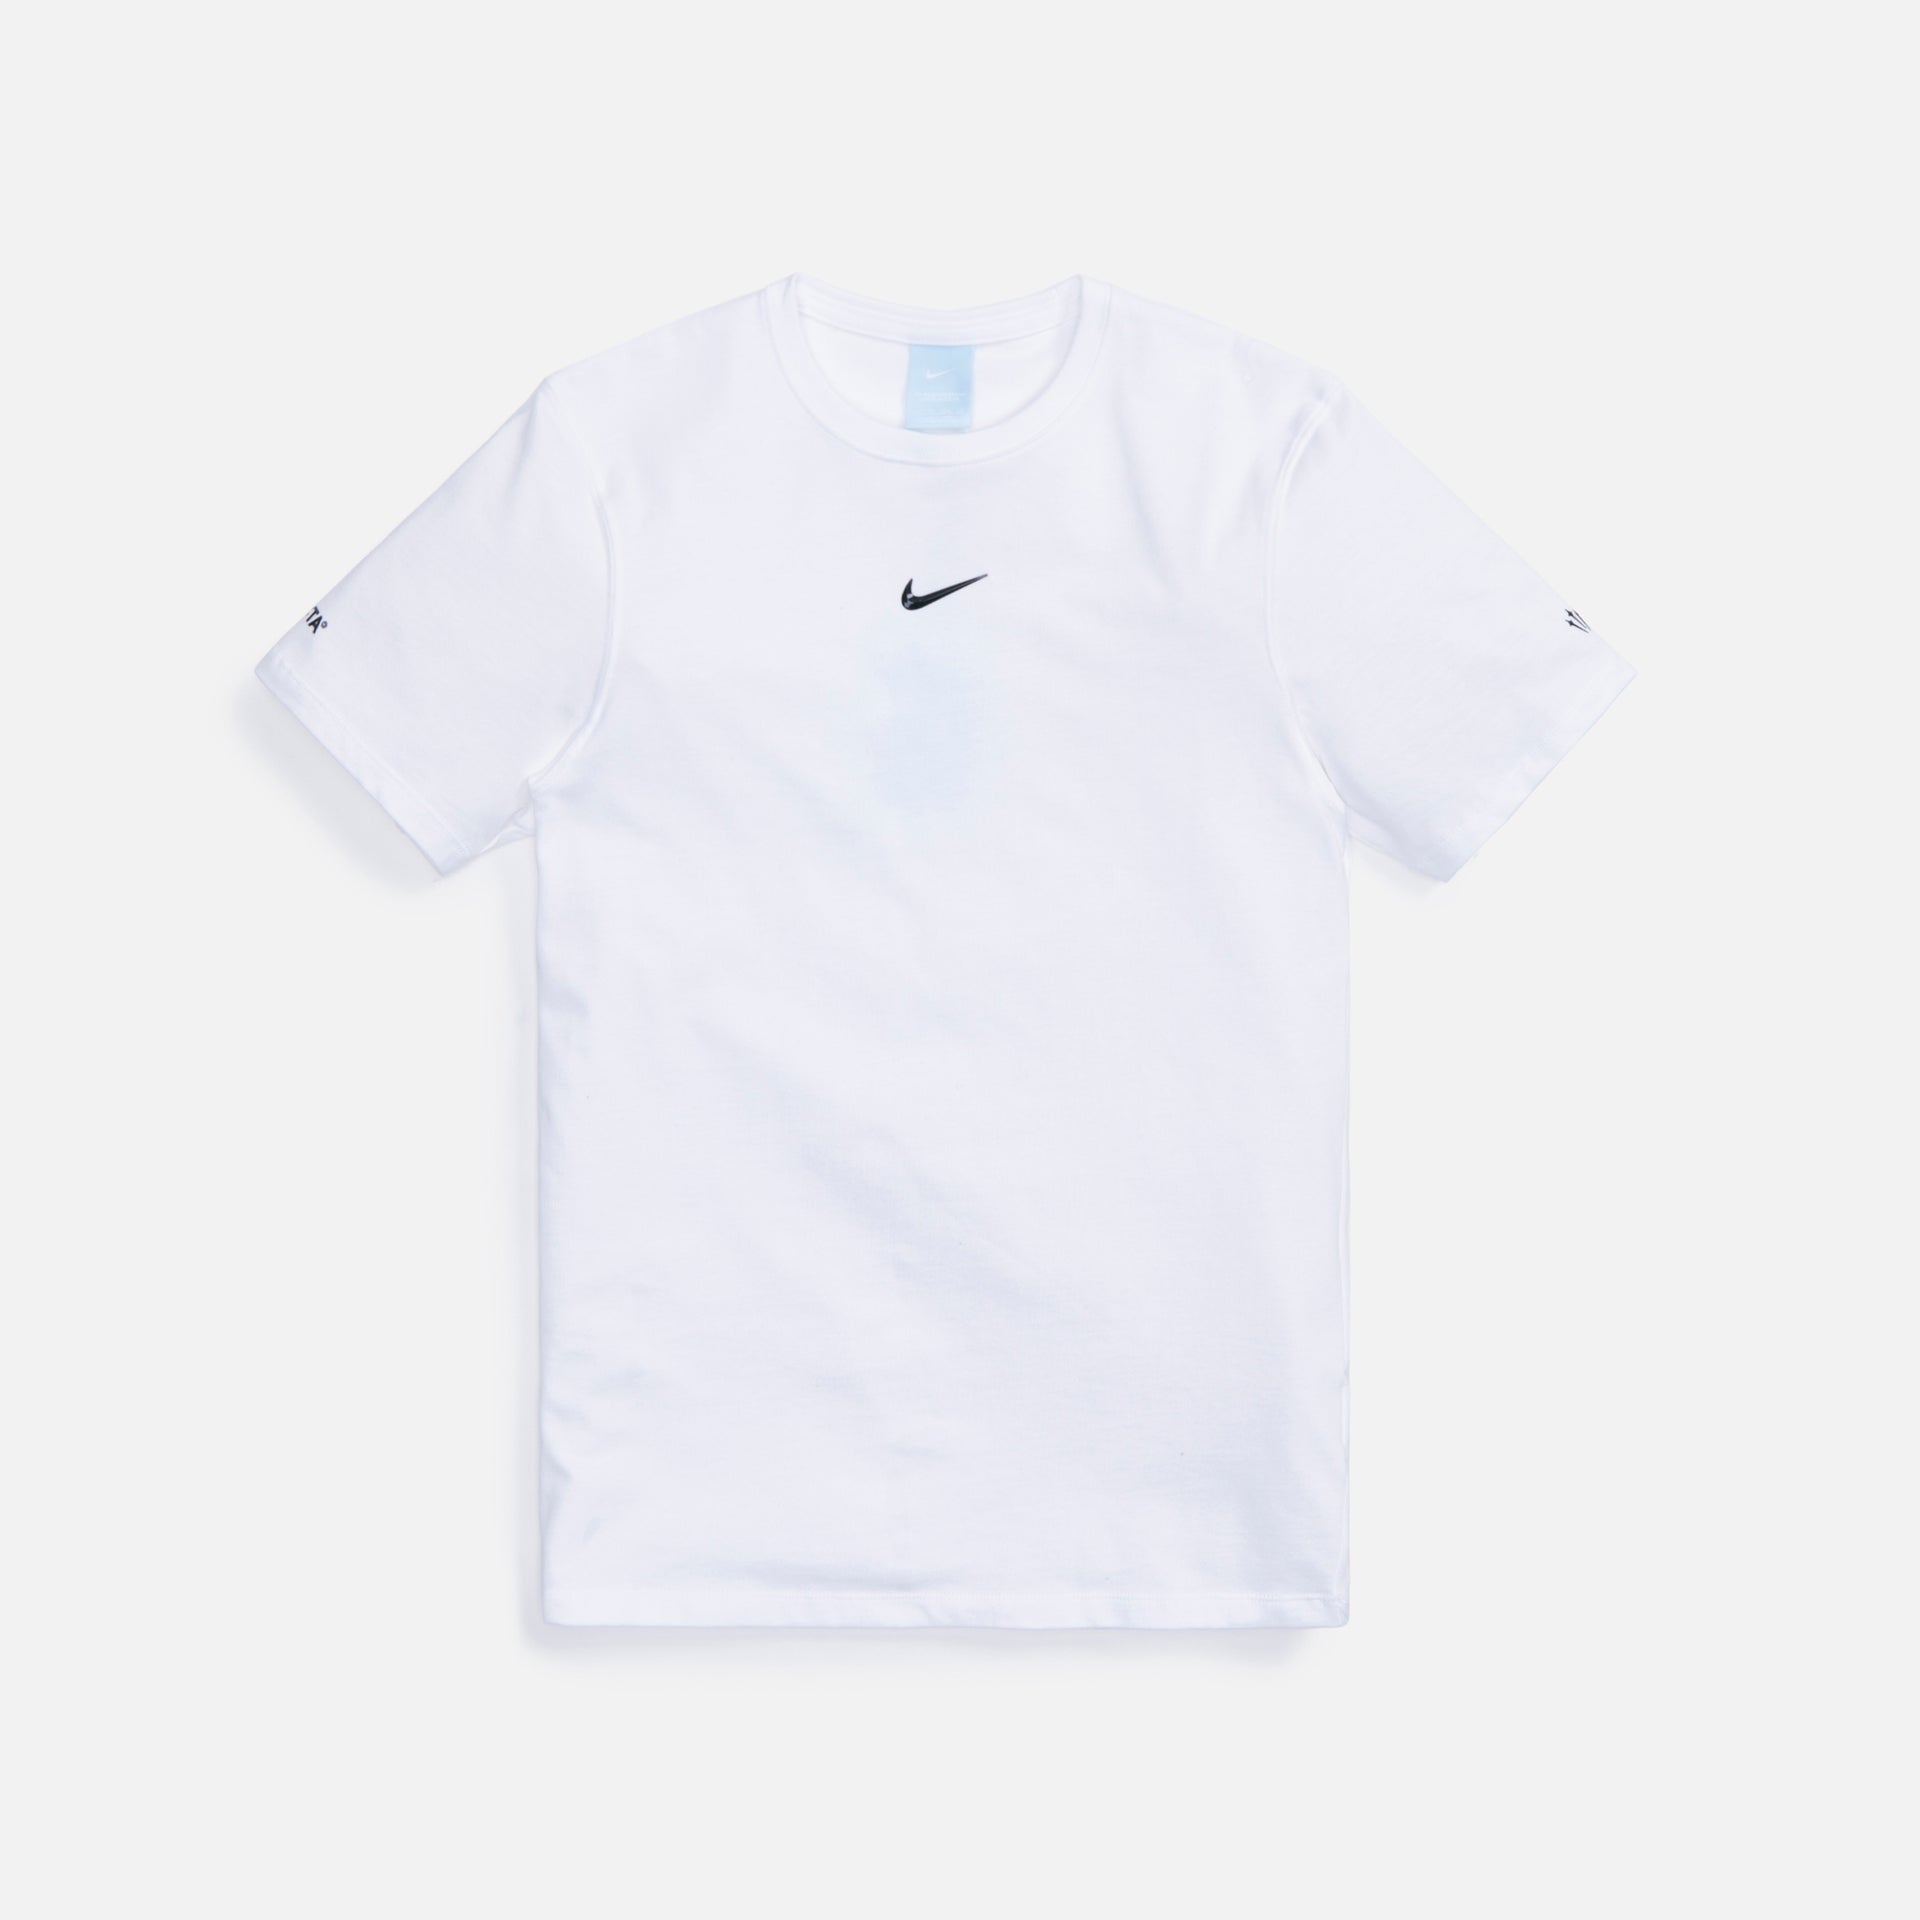 Nike x Nocta Top - White